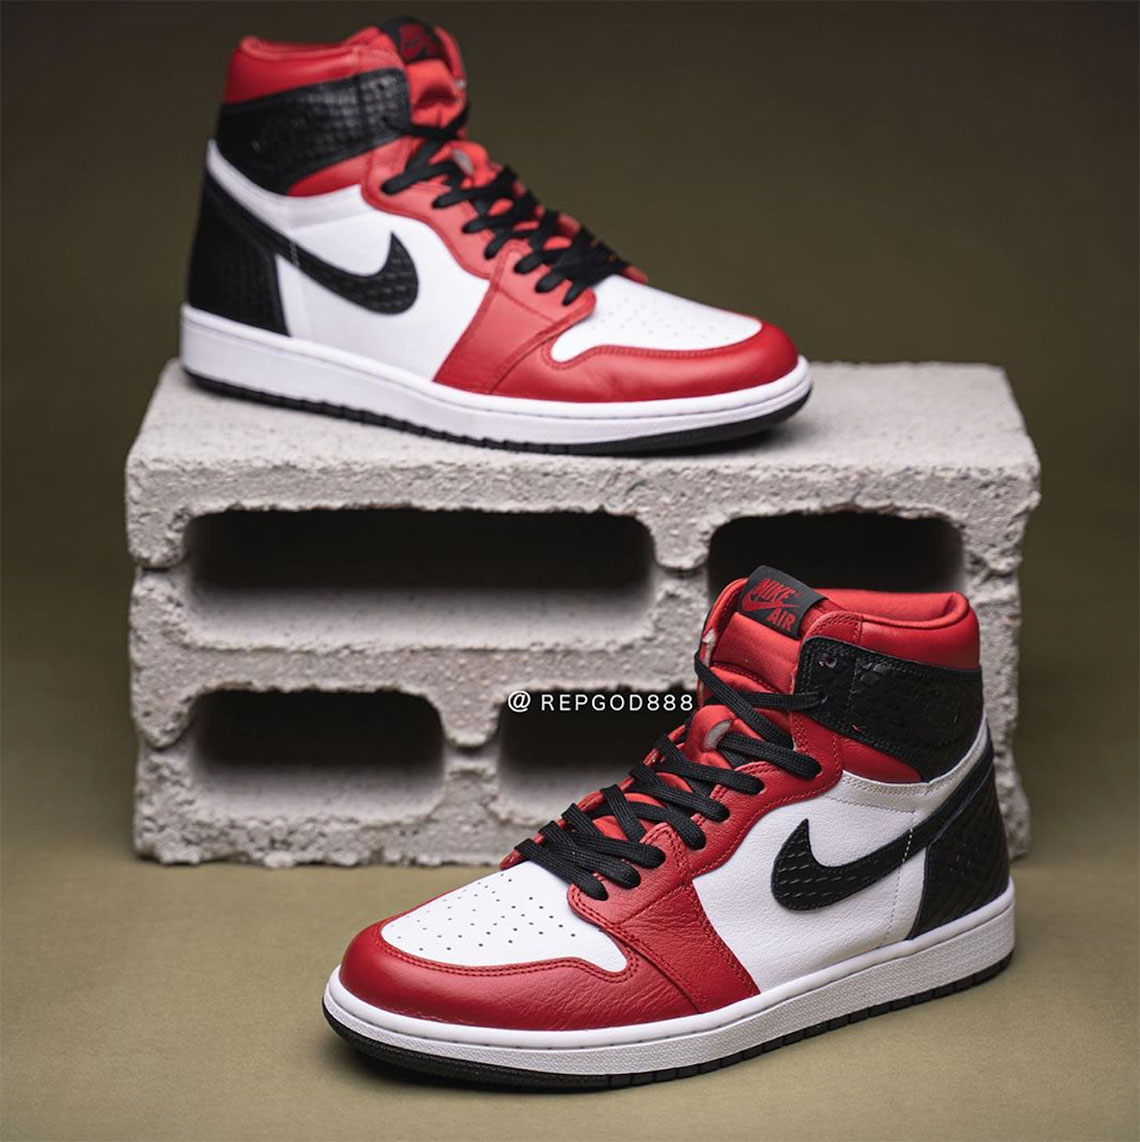 Air Jordan 1 Satin Snake Release Date | SneakerNews.com